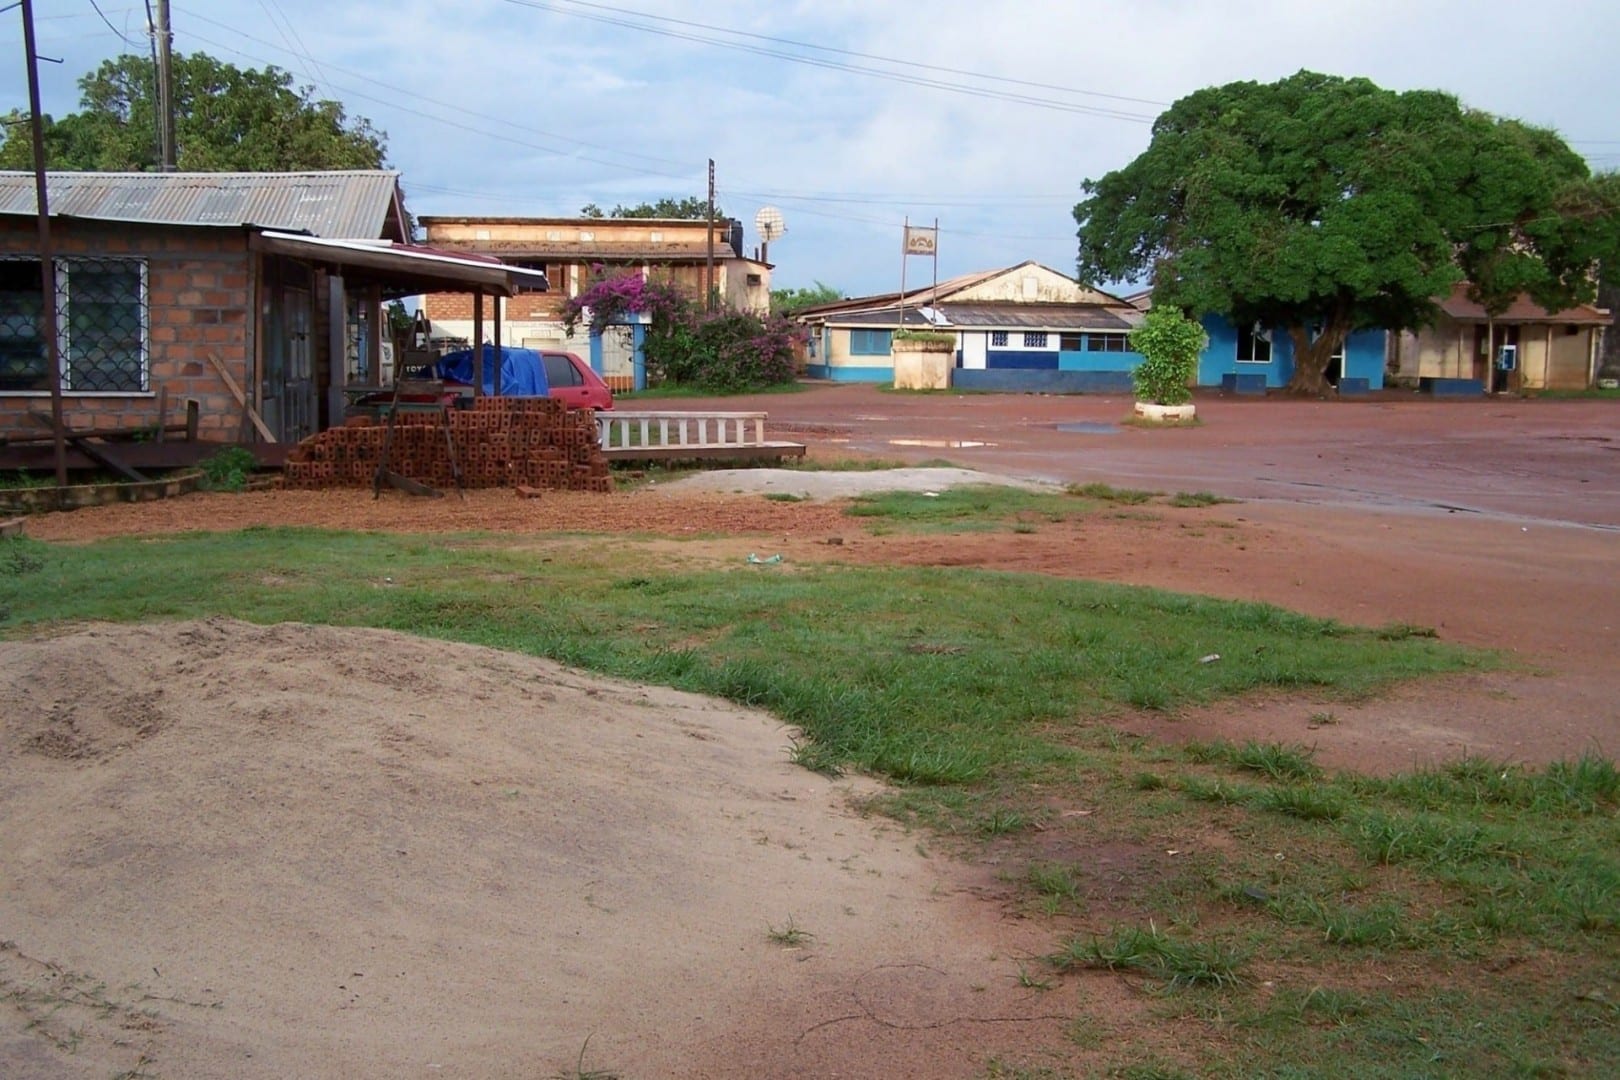 Vista de Lethem en el sur del país Guyana